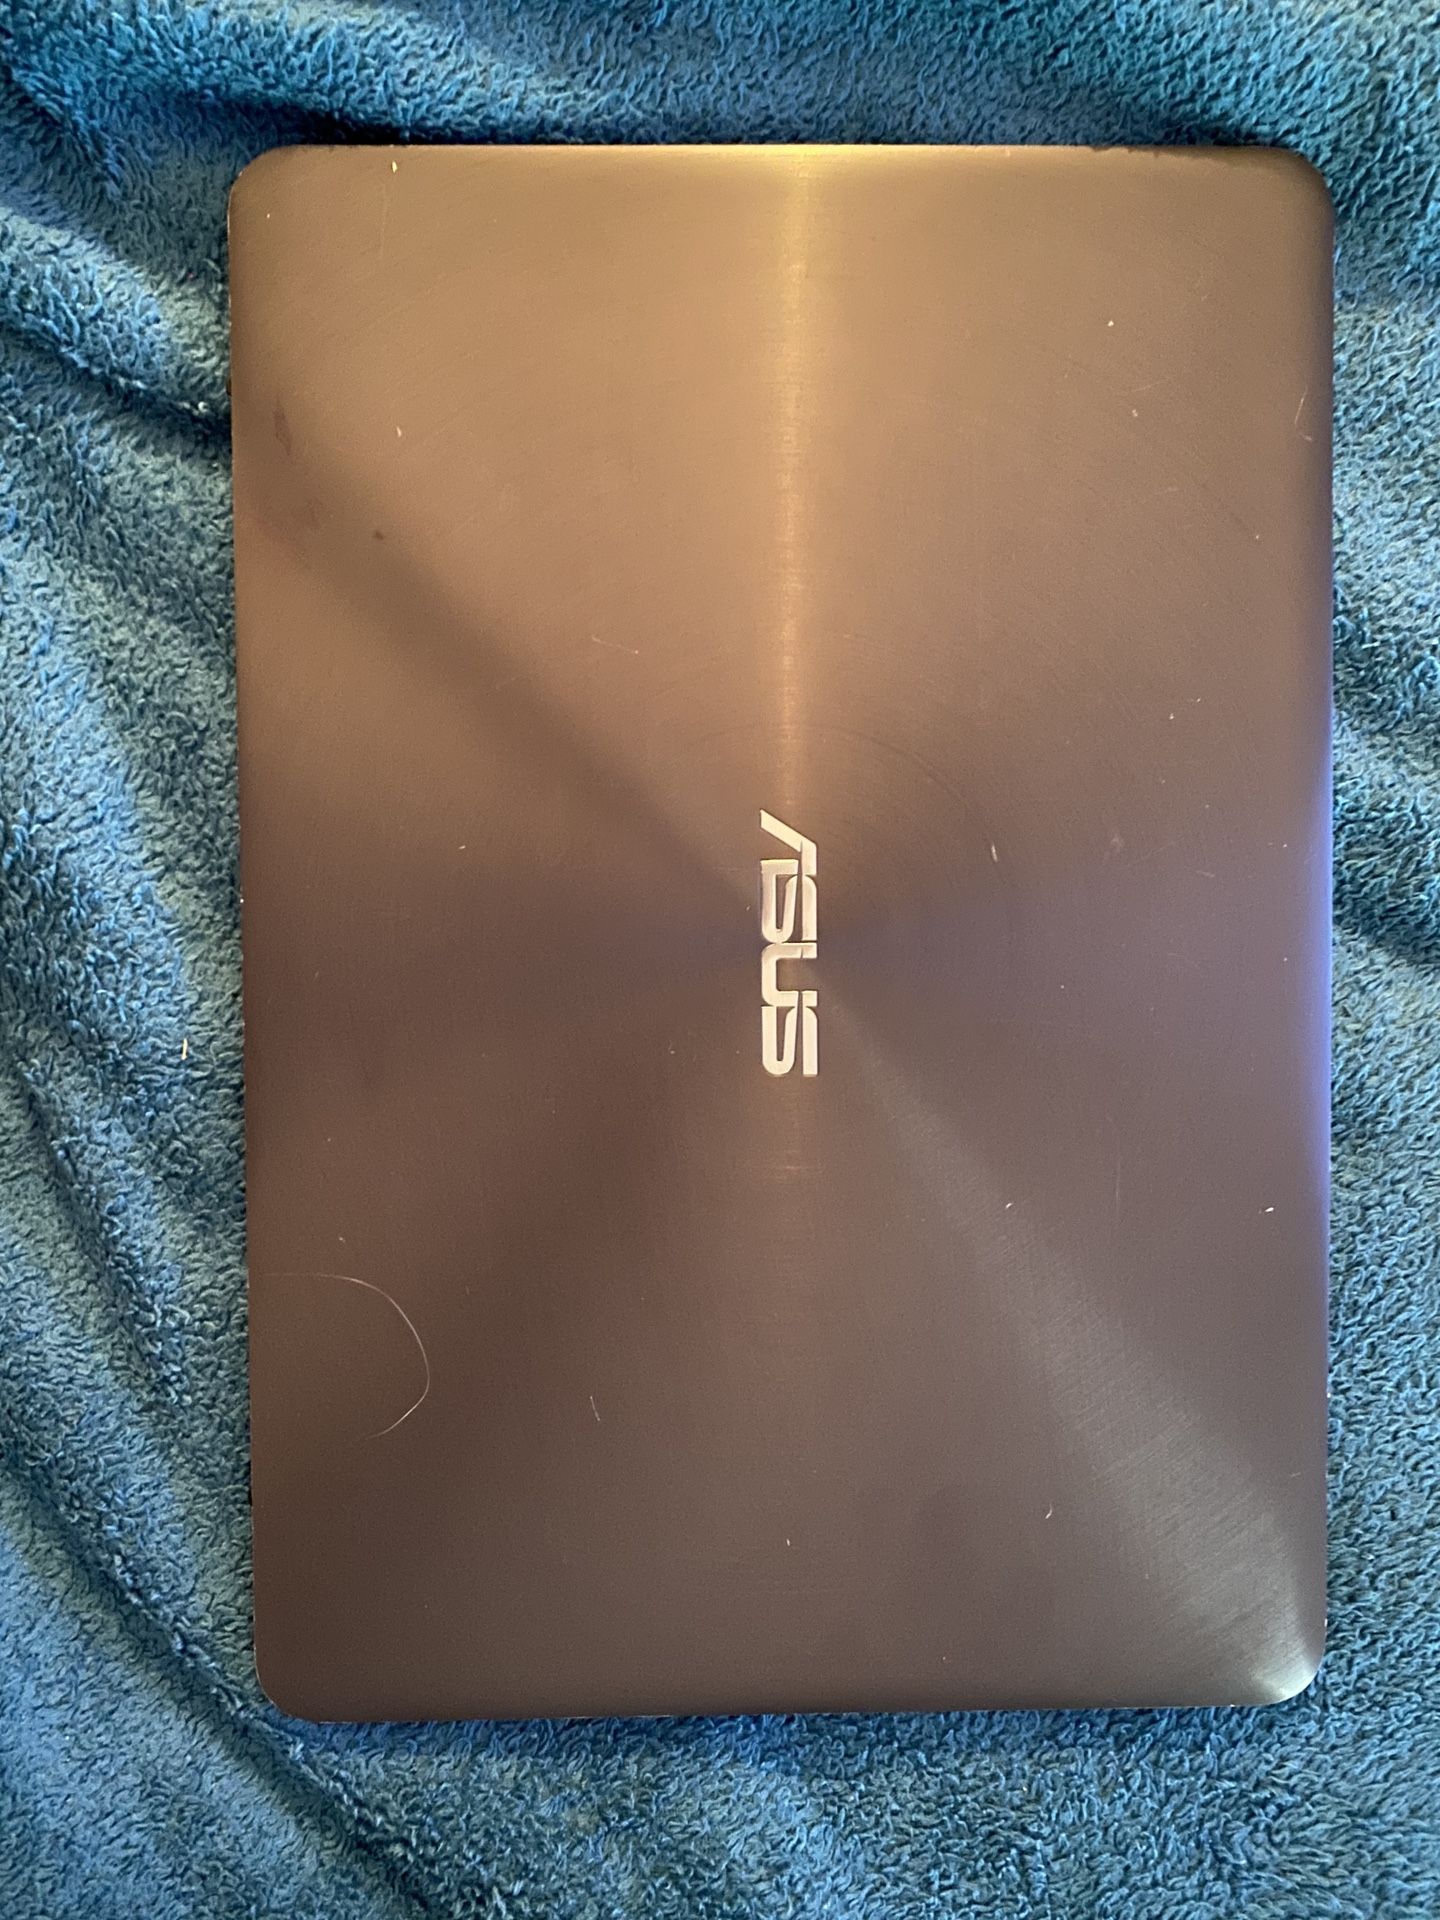 Asus Zenbook 13in laptop